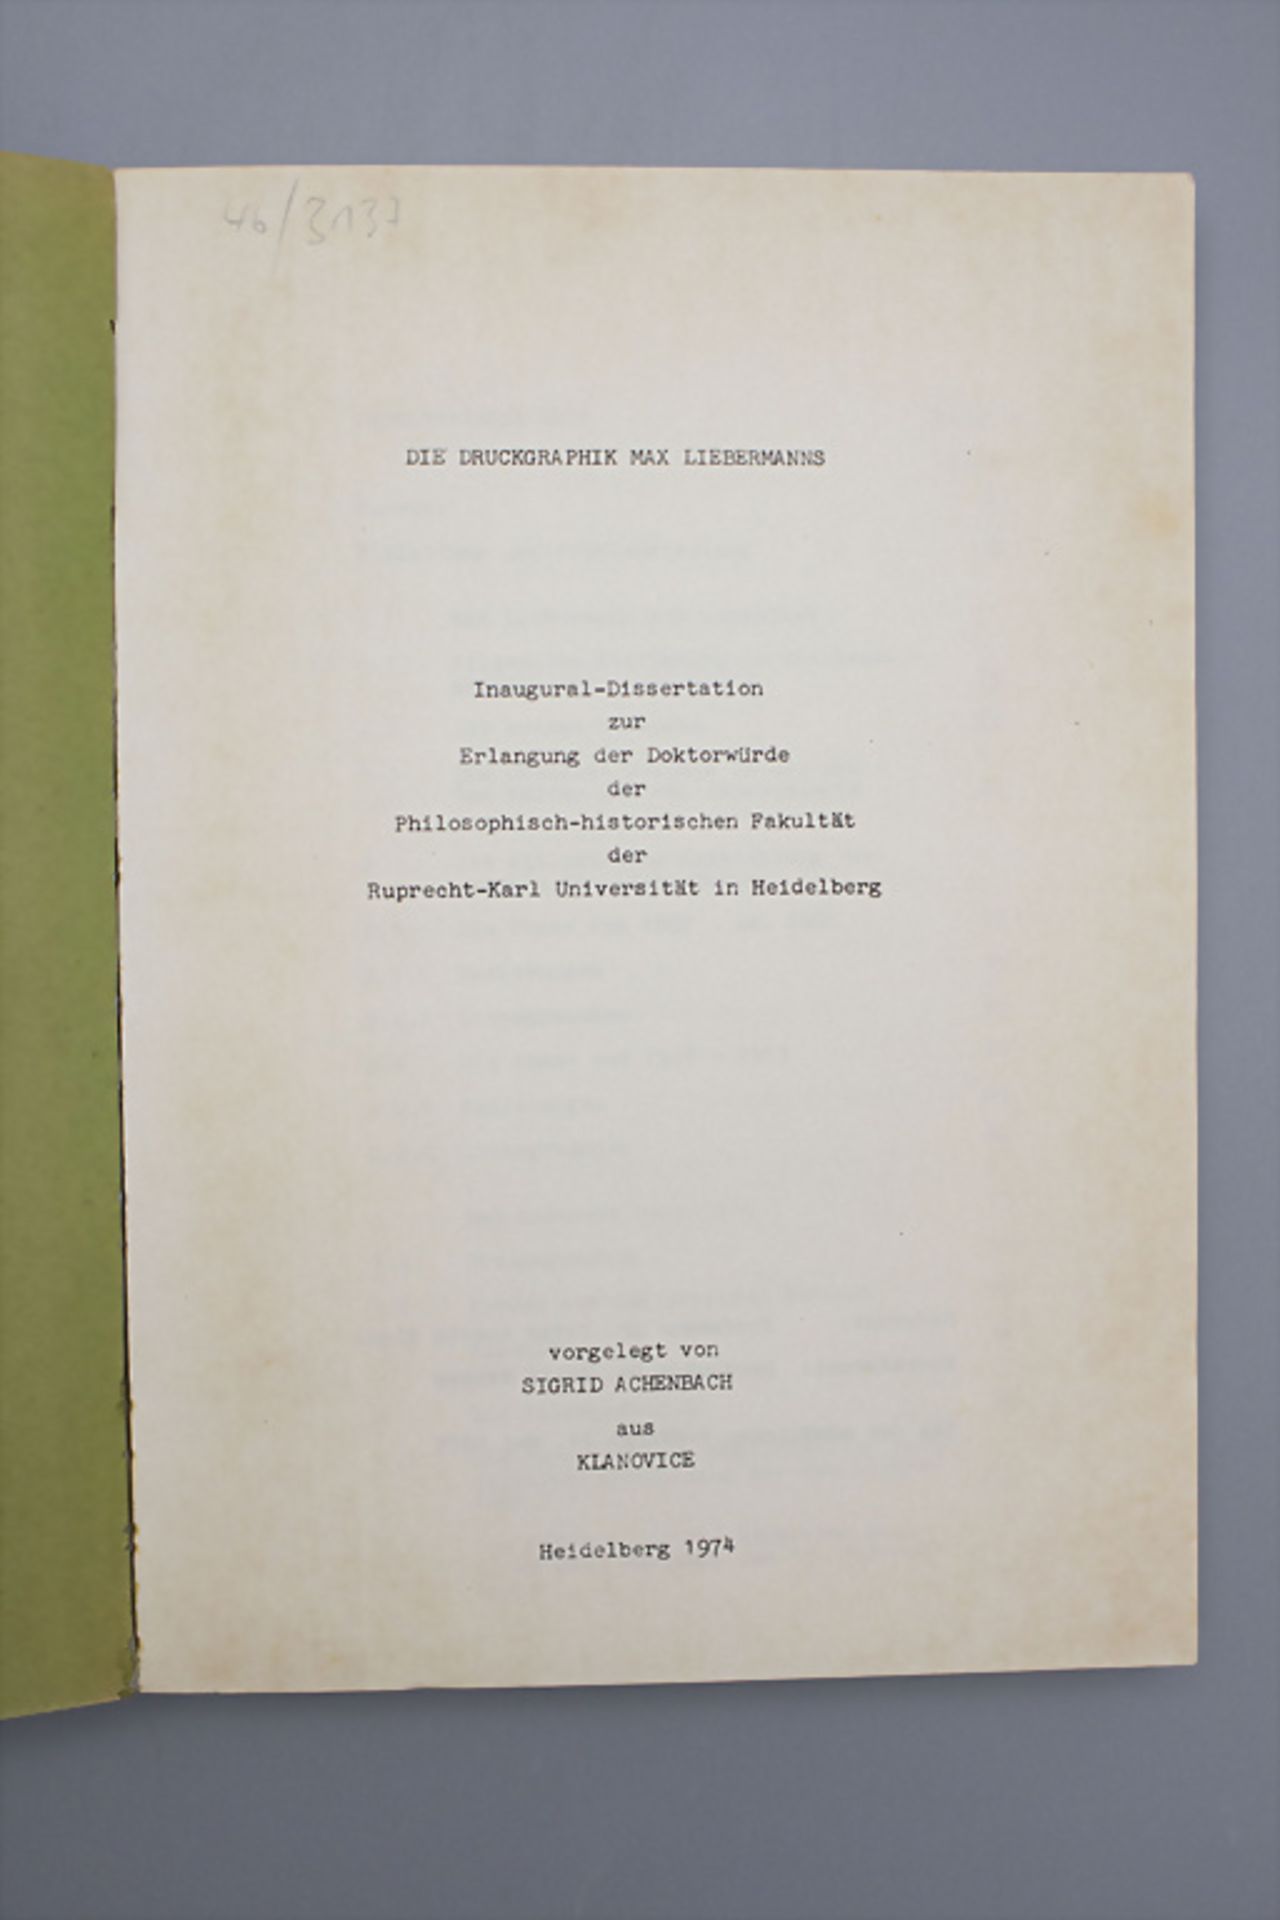 Sigrid Achenbach: 'Die Druckgrafik Max Liebermanns', Dissertation, Heidelberg, 1974 - Image 3 of 6